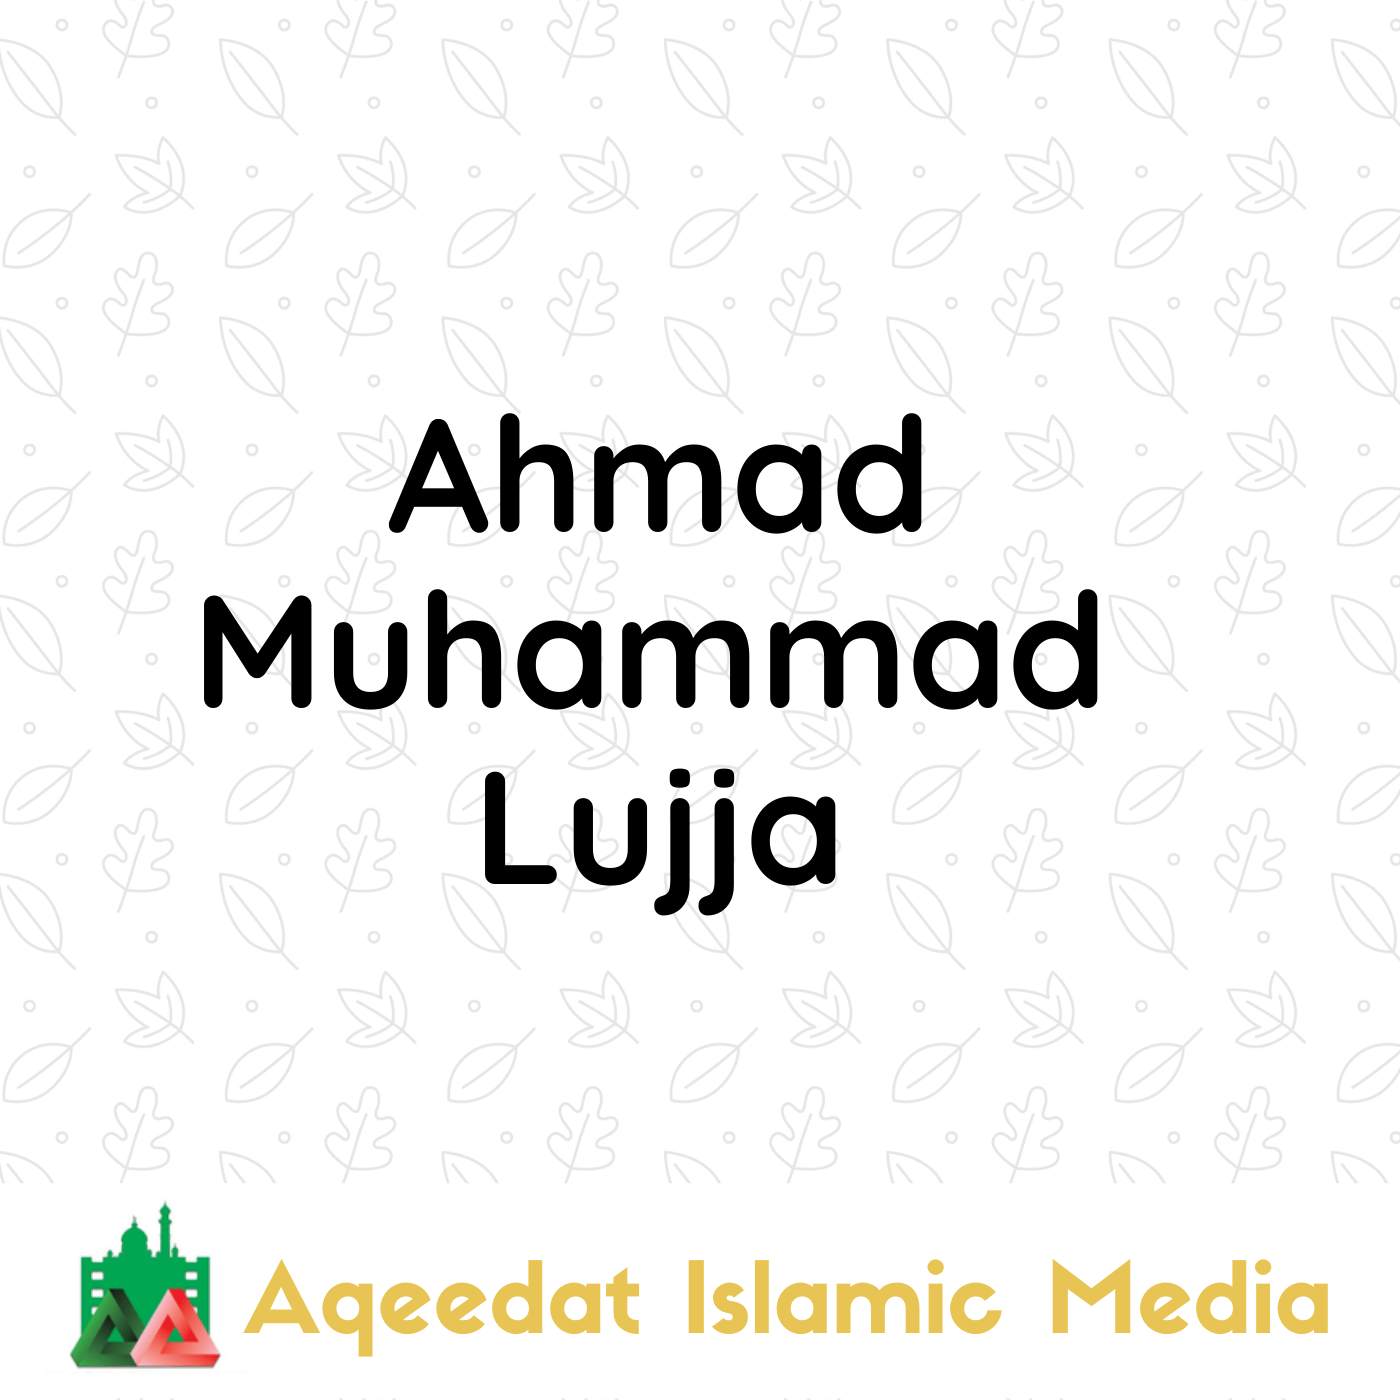  Ahmad Muhammad Lujja